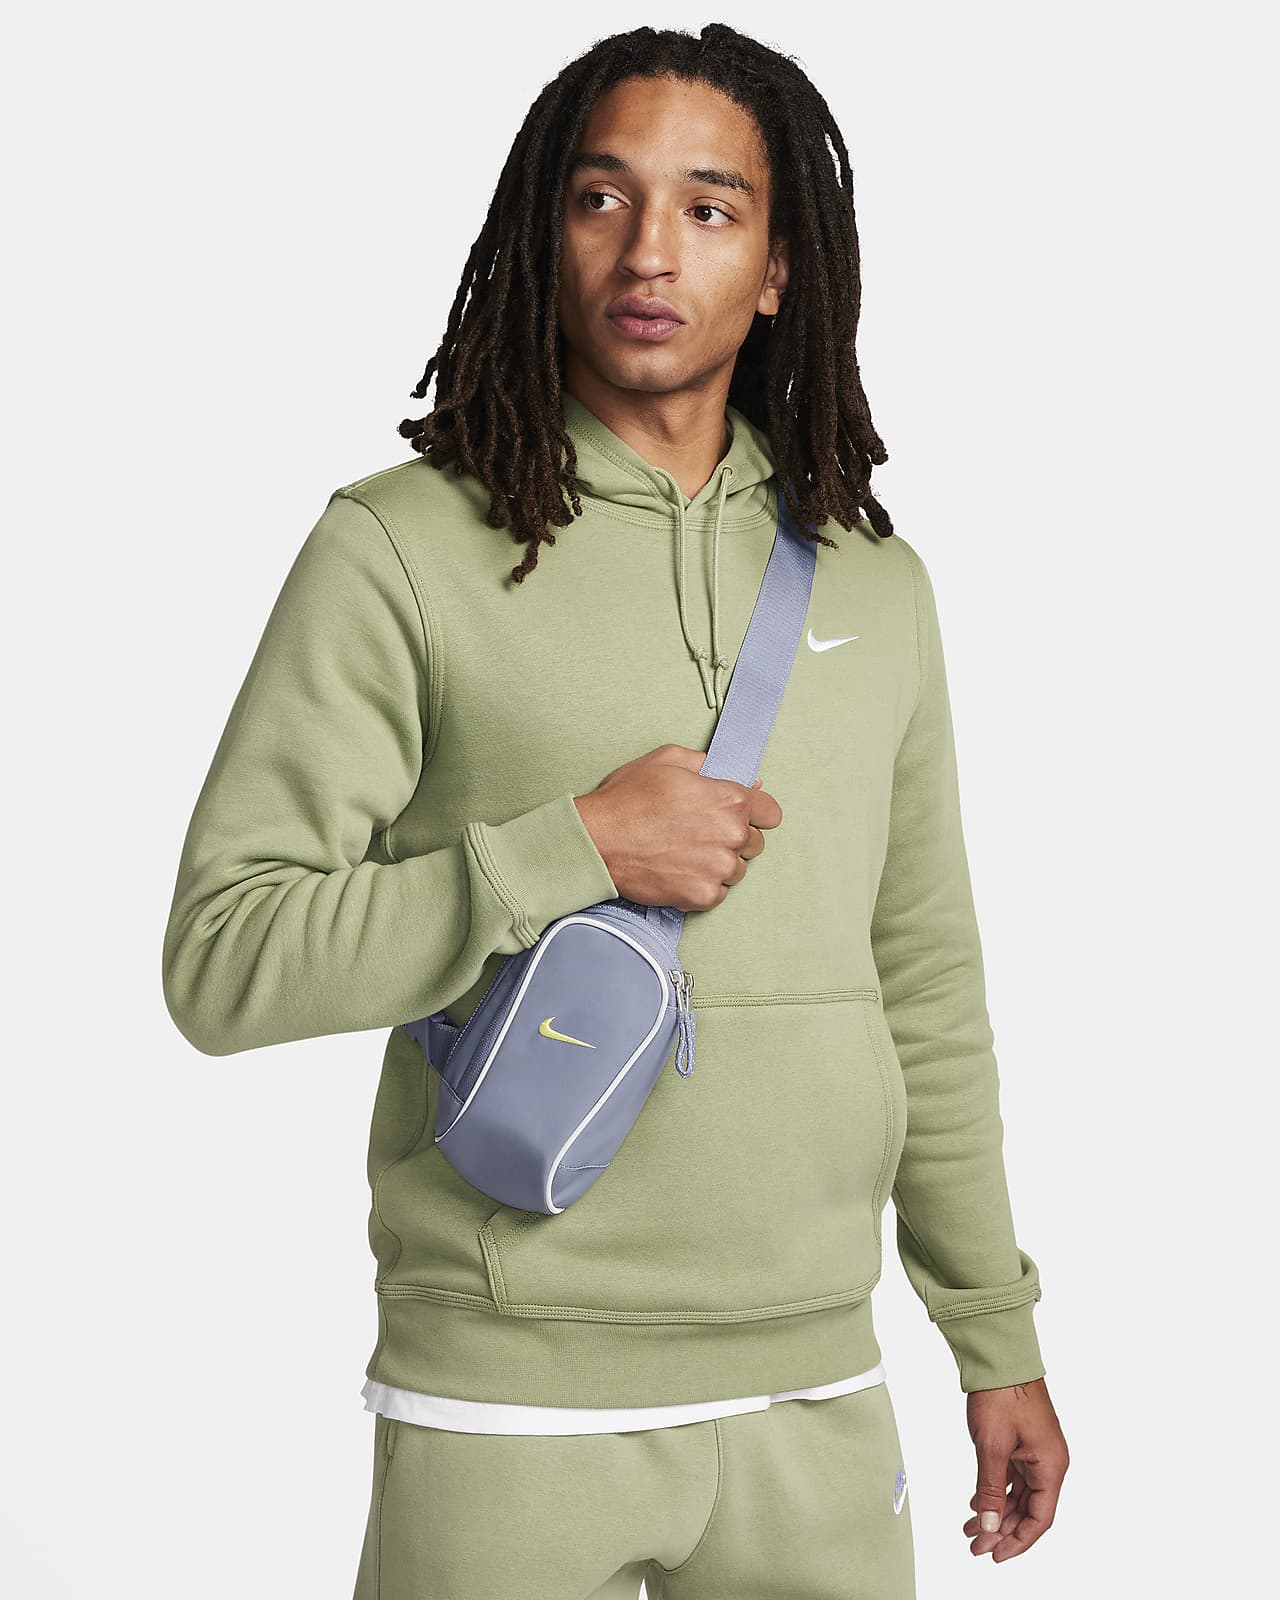 Torba przez ramię Nike Sportswear Essentials (1 l)